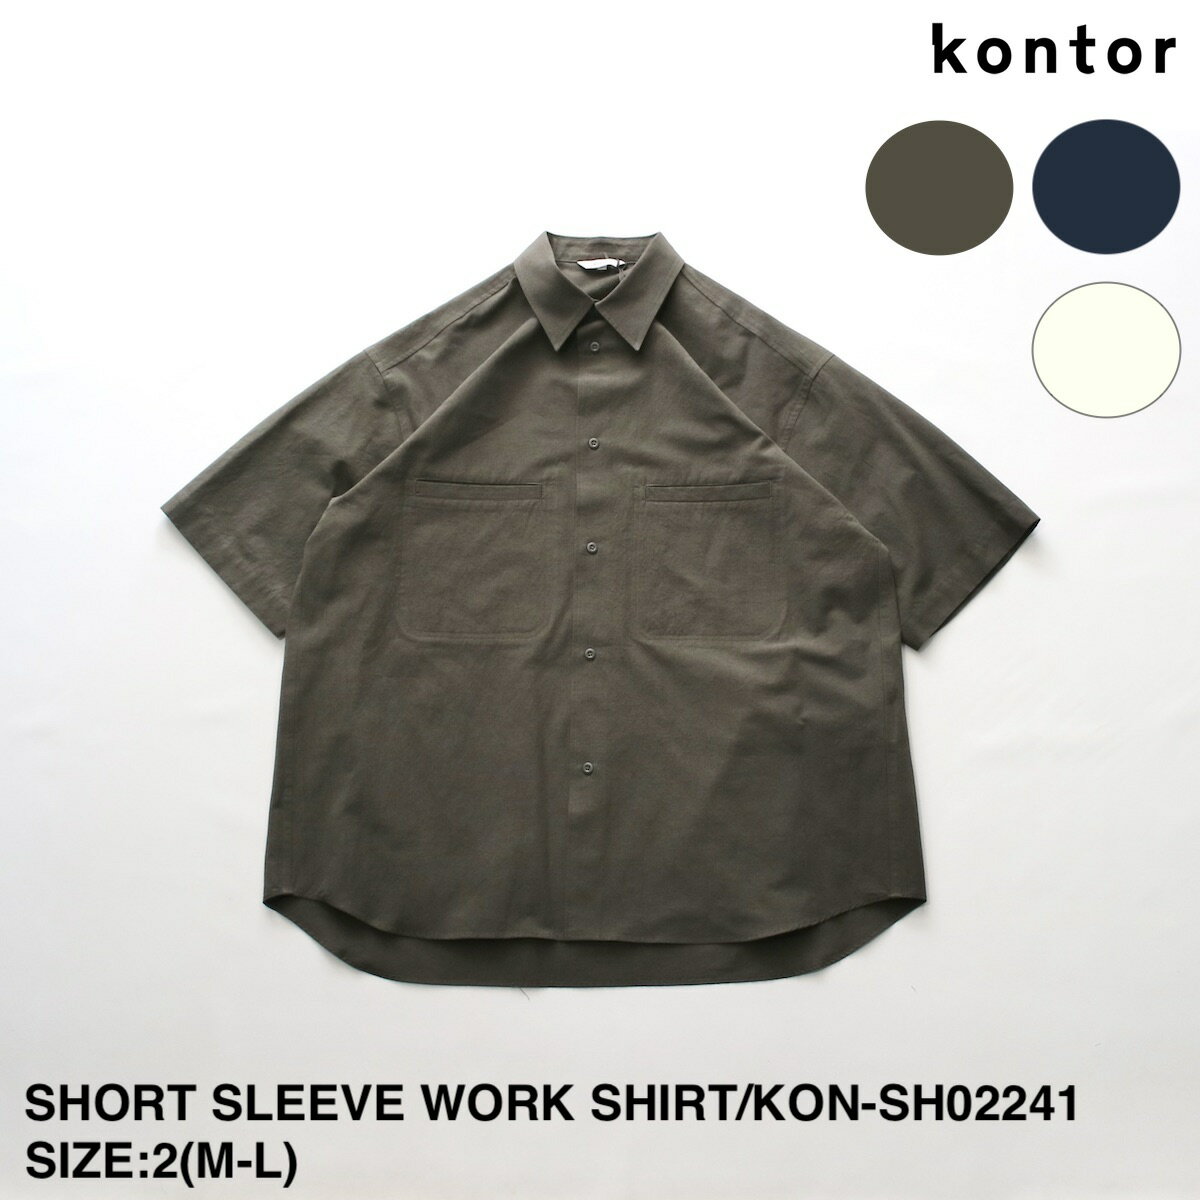 コントール SHORT SLEEVE WORK SHIRT | メンズ シャツ メンズシャツ ワーク ワークシャツ ショートスリーブ ショートスリーブシャツ ワークショートスリーブシャツ ワッシャー加工 ワッシャー加工シャツ 半袖 半袖シャツ カジュアル シンプル ブランド 日本製